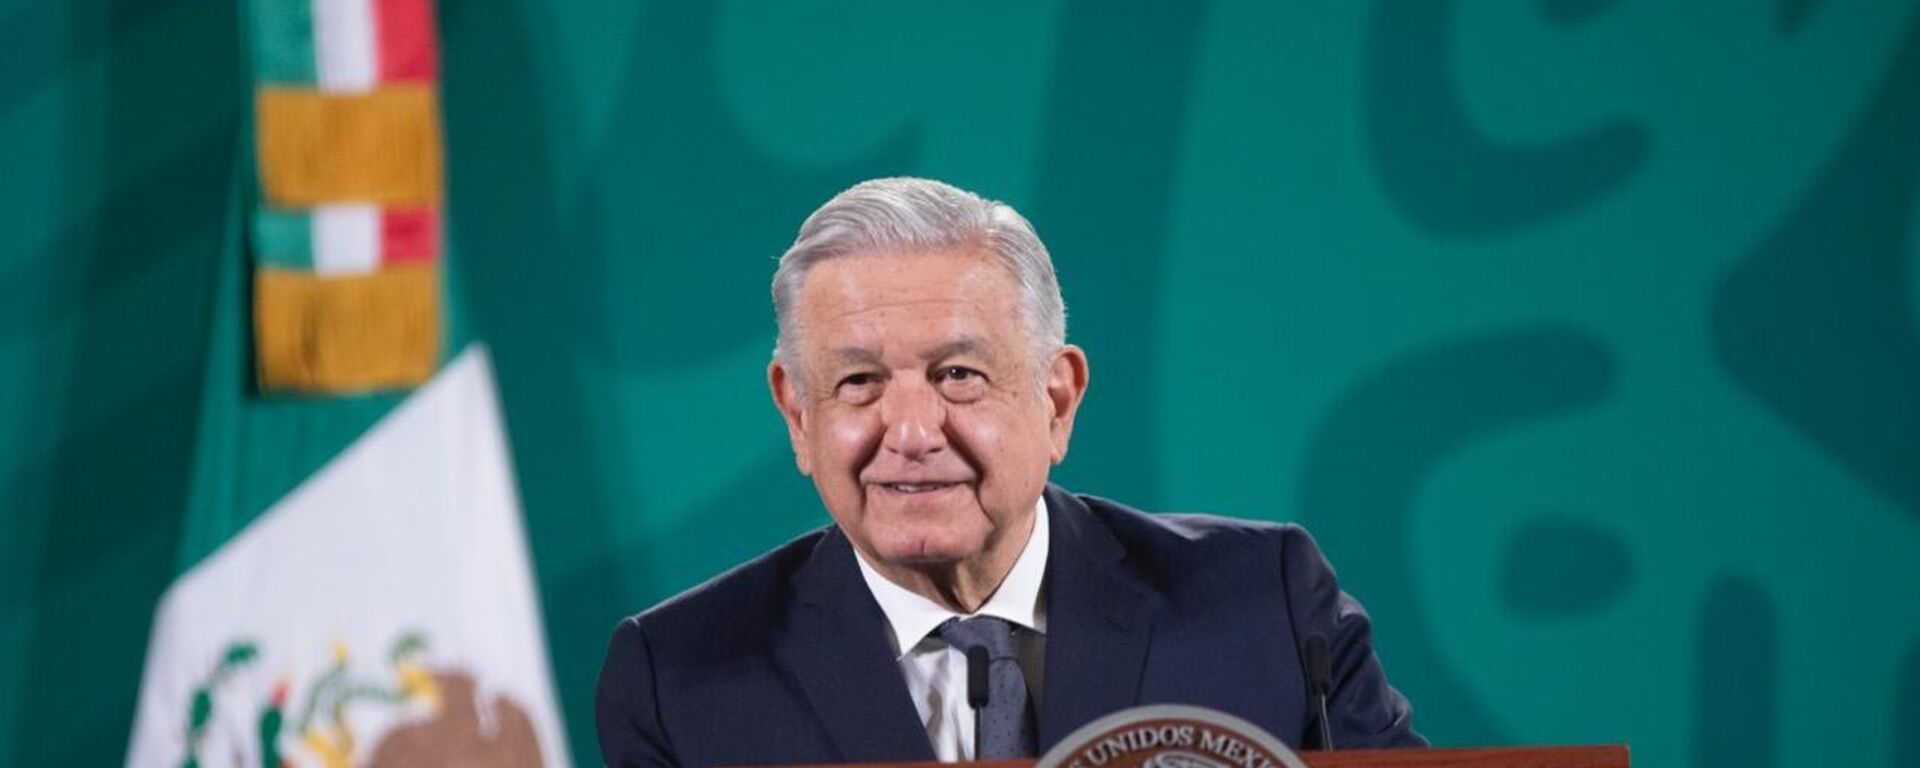 Andrés Manuel López Obrador, presidente de México - Sputnik Mundo, 1920, 14.10.2021